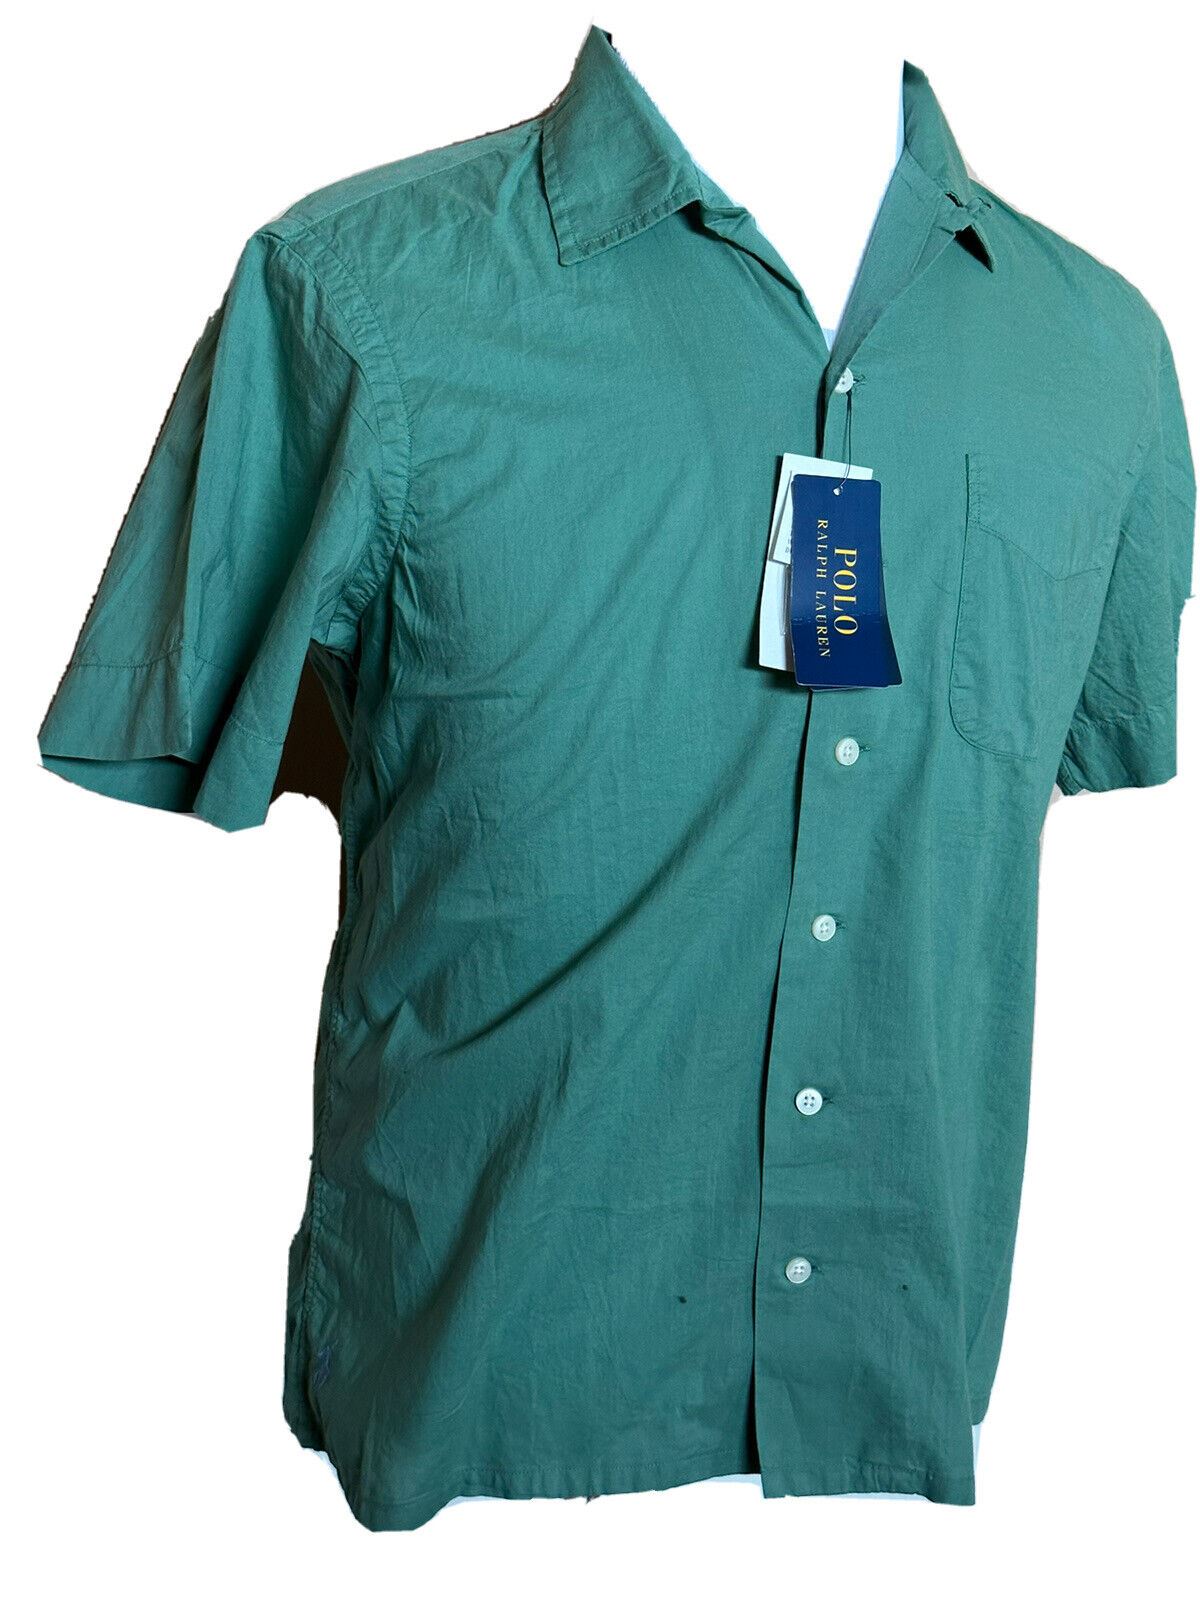 Neu mit Etikett: Polo Ralph Lauren Herren-Hemd, grün, kurzärmelig, Größe M, hergestellt in Indien